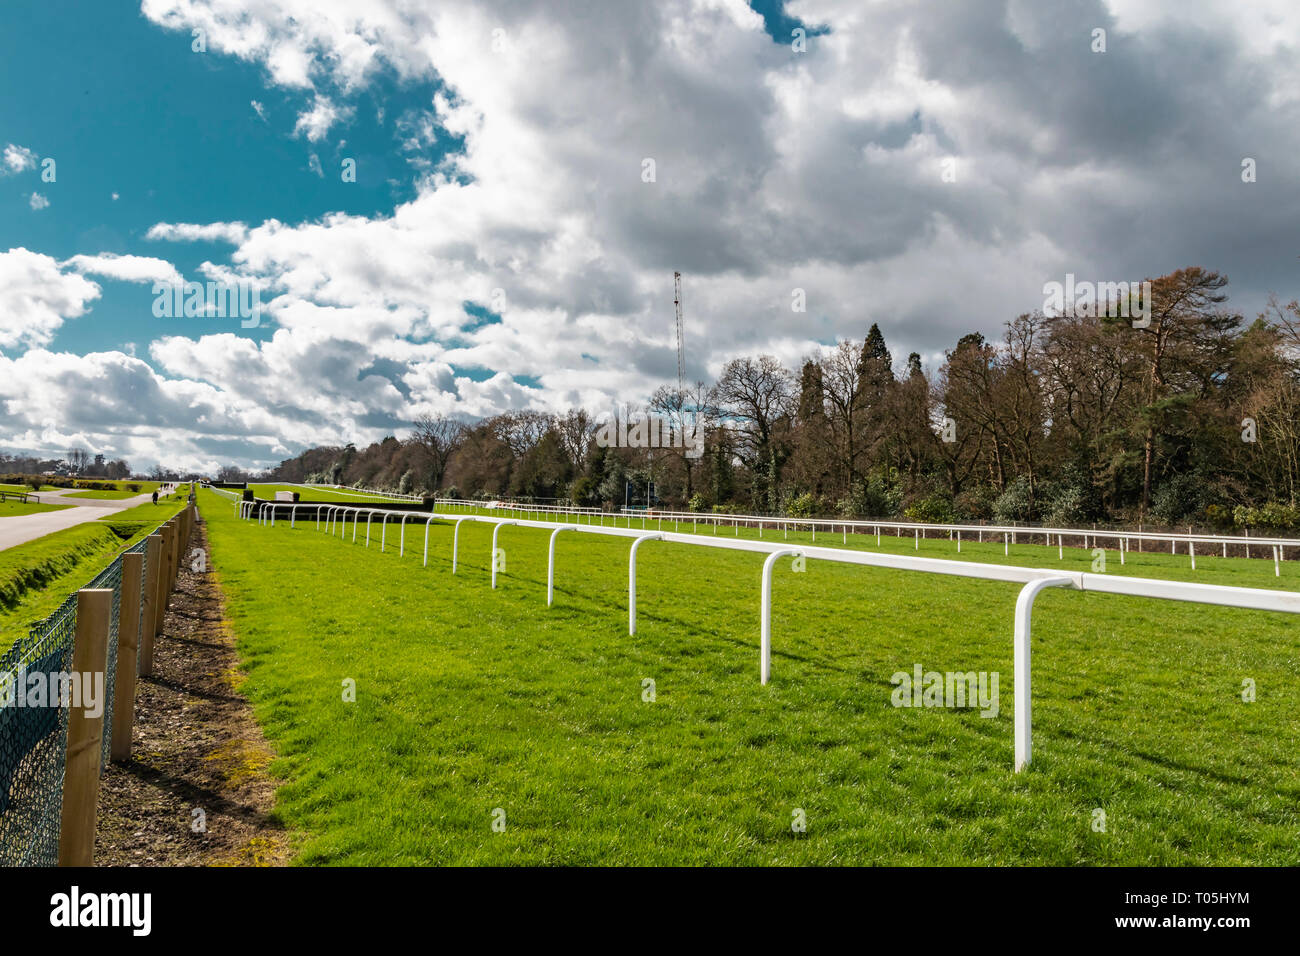 Ascot, England - März 17, 2019: Blick auf den berühmten britischen Pferderennbahn Ascot Heath, bekannt für seine Pferderennen. Stockfoto